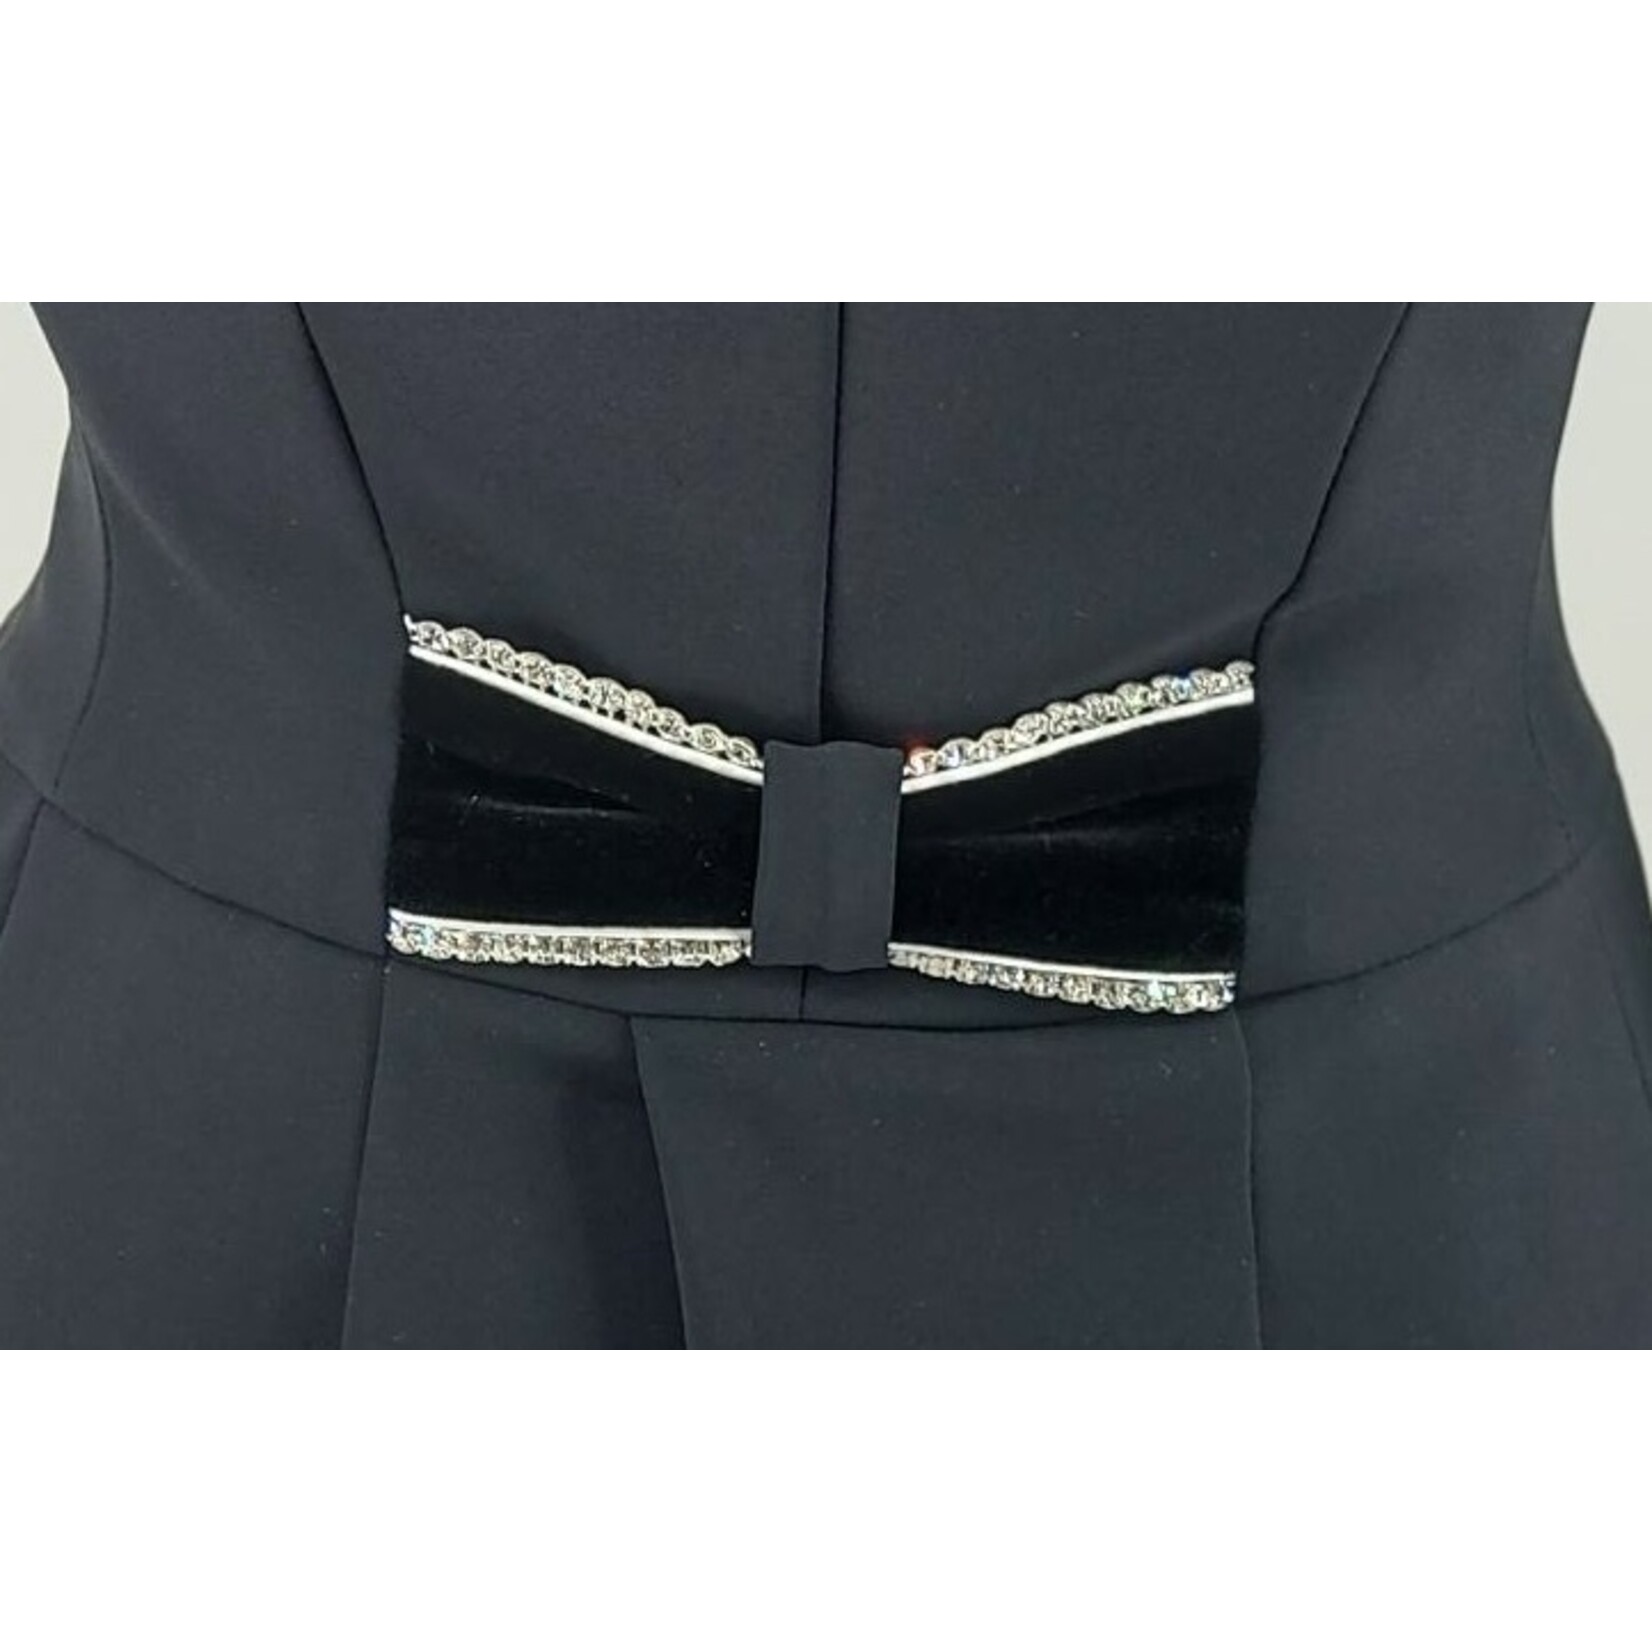 Lamantia Couture Nederland DEMO Lamantia Couture verkorte slipjas zwart-wit fluweel  (maat 32 en 40)